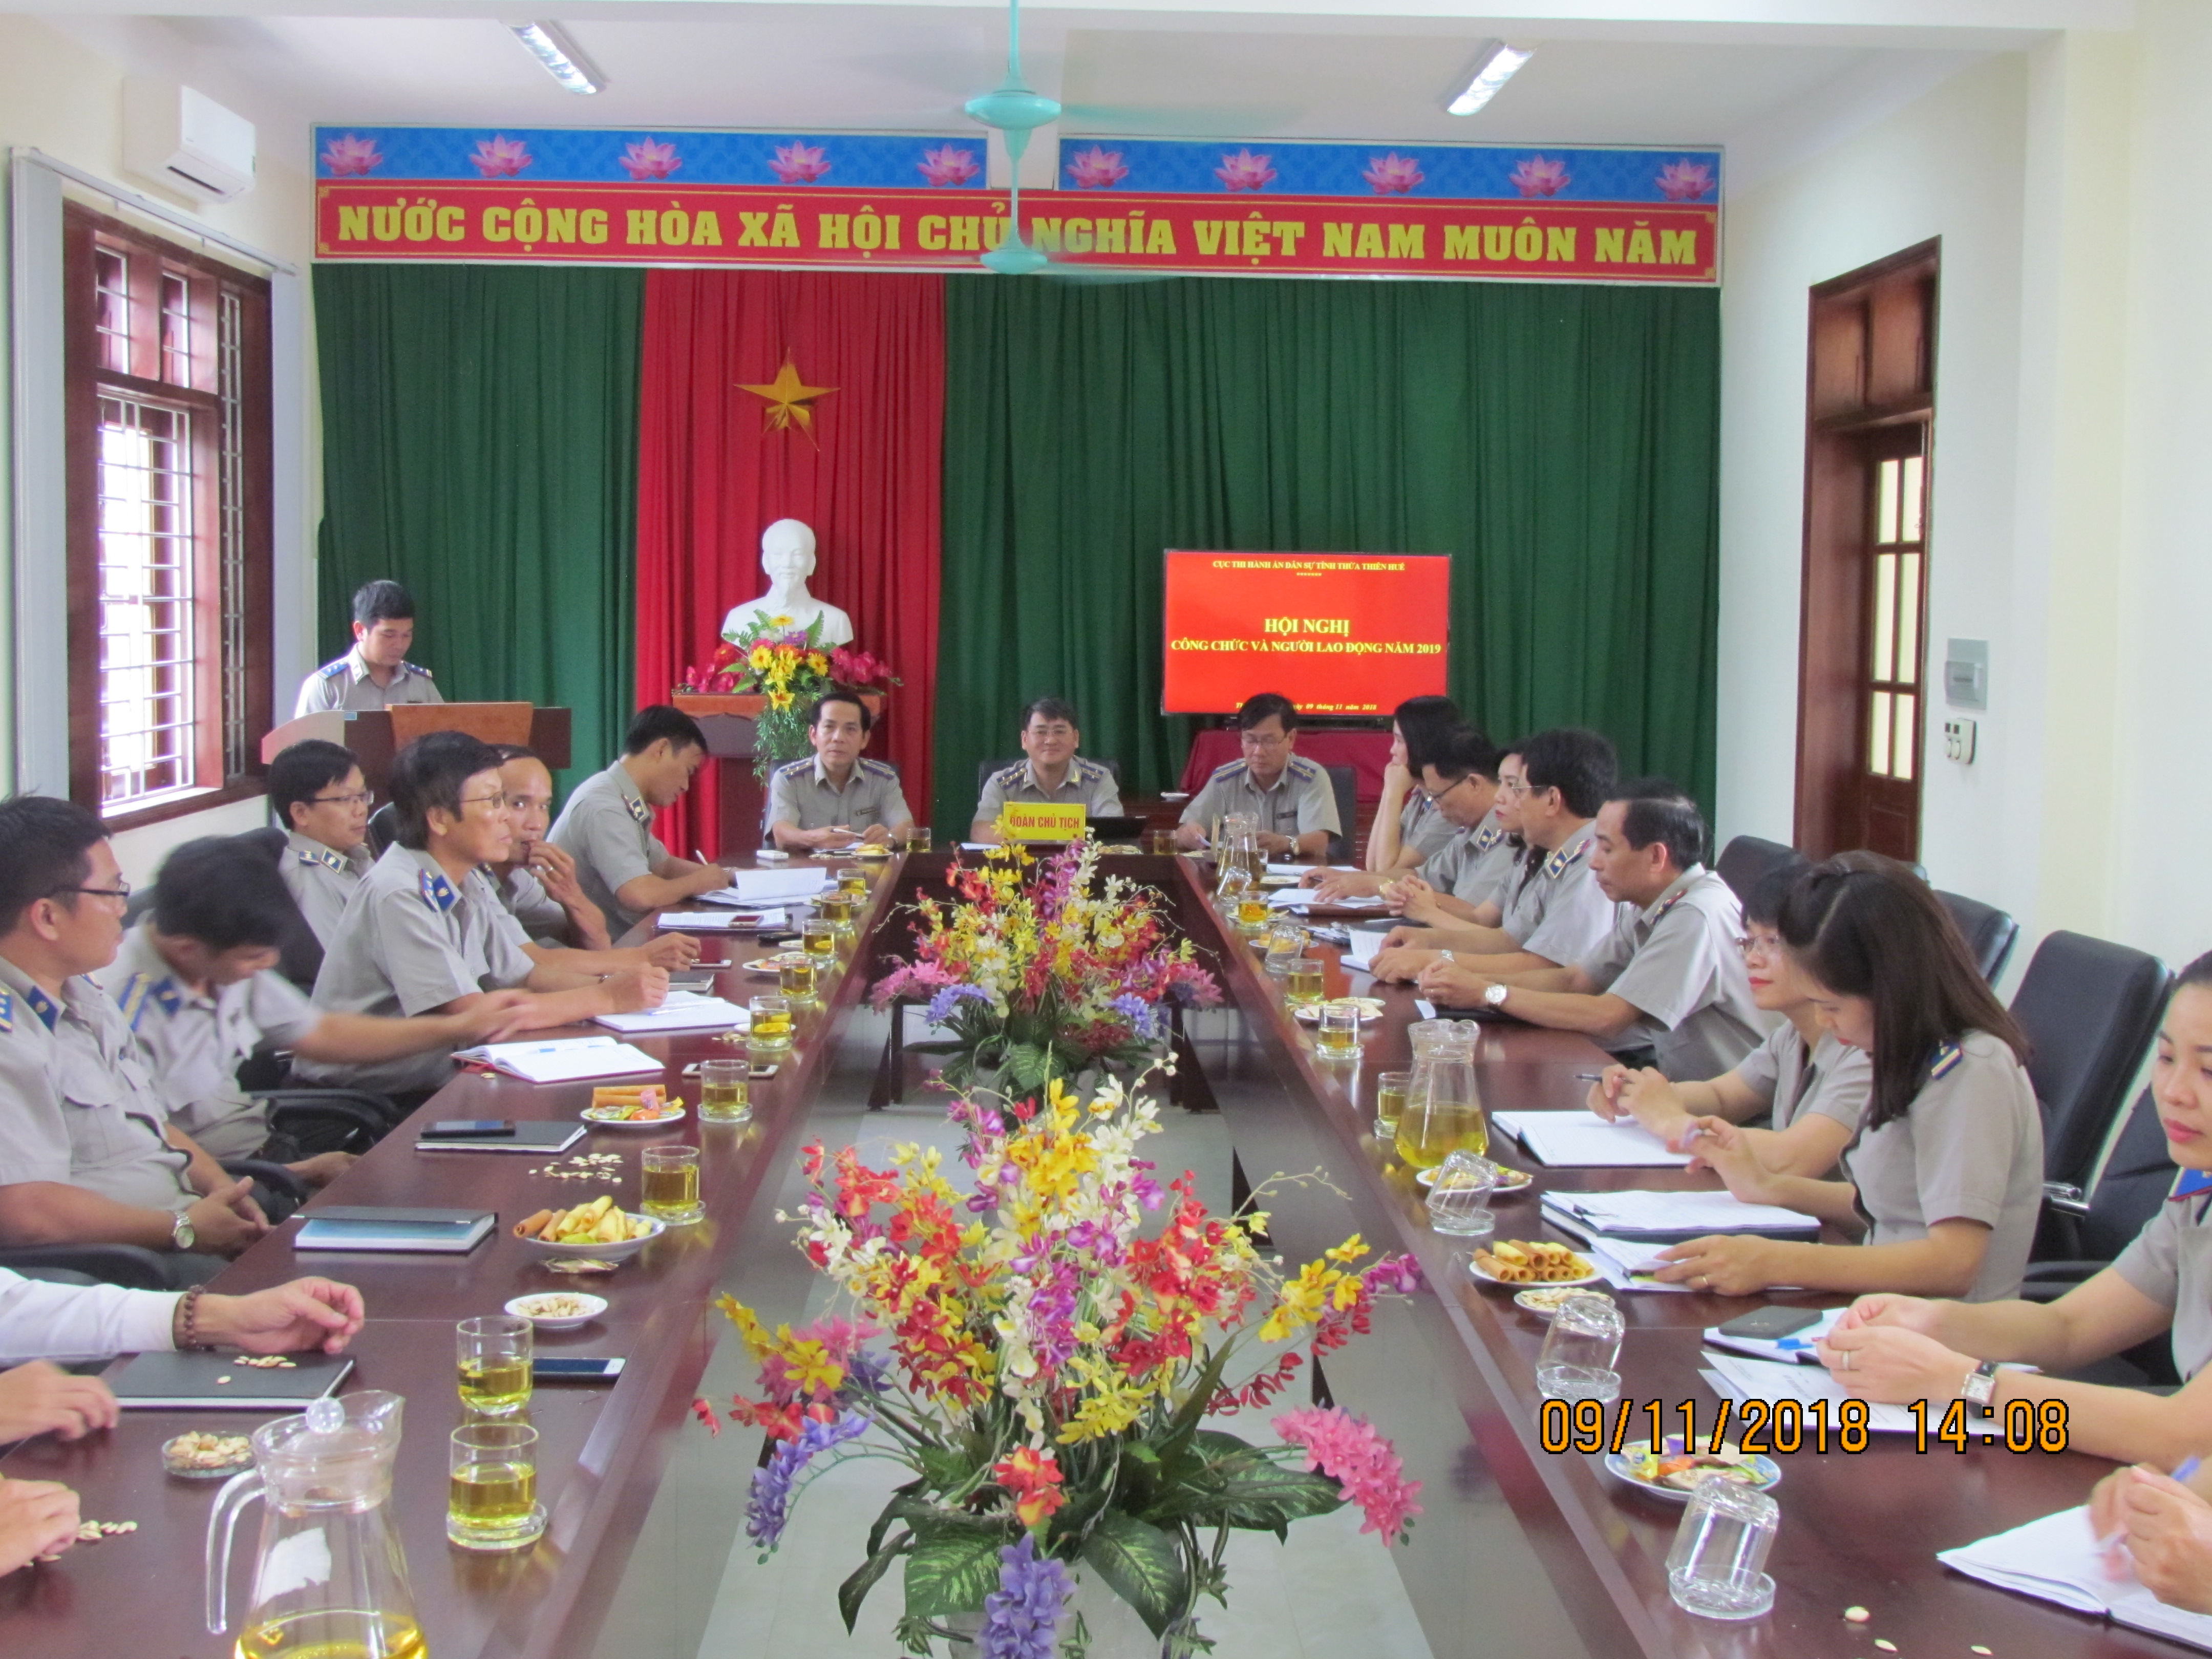 Cơ quan Cục Thi hành án dân sự tỉnh Thừa Thiên Huế tổ chức Hội nghị công chức, người lao động năm 2019